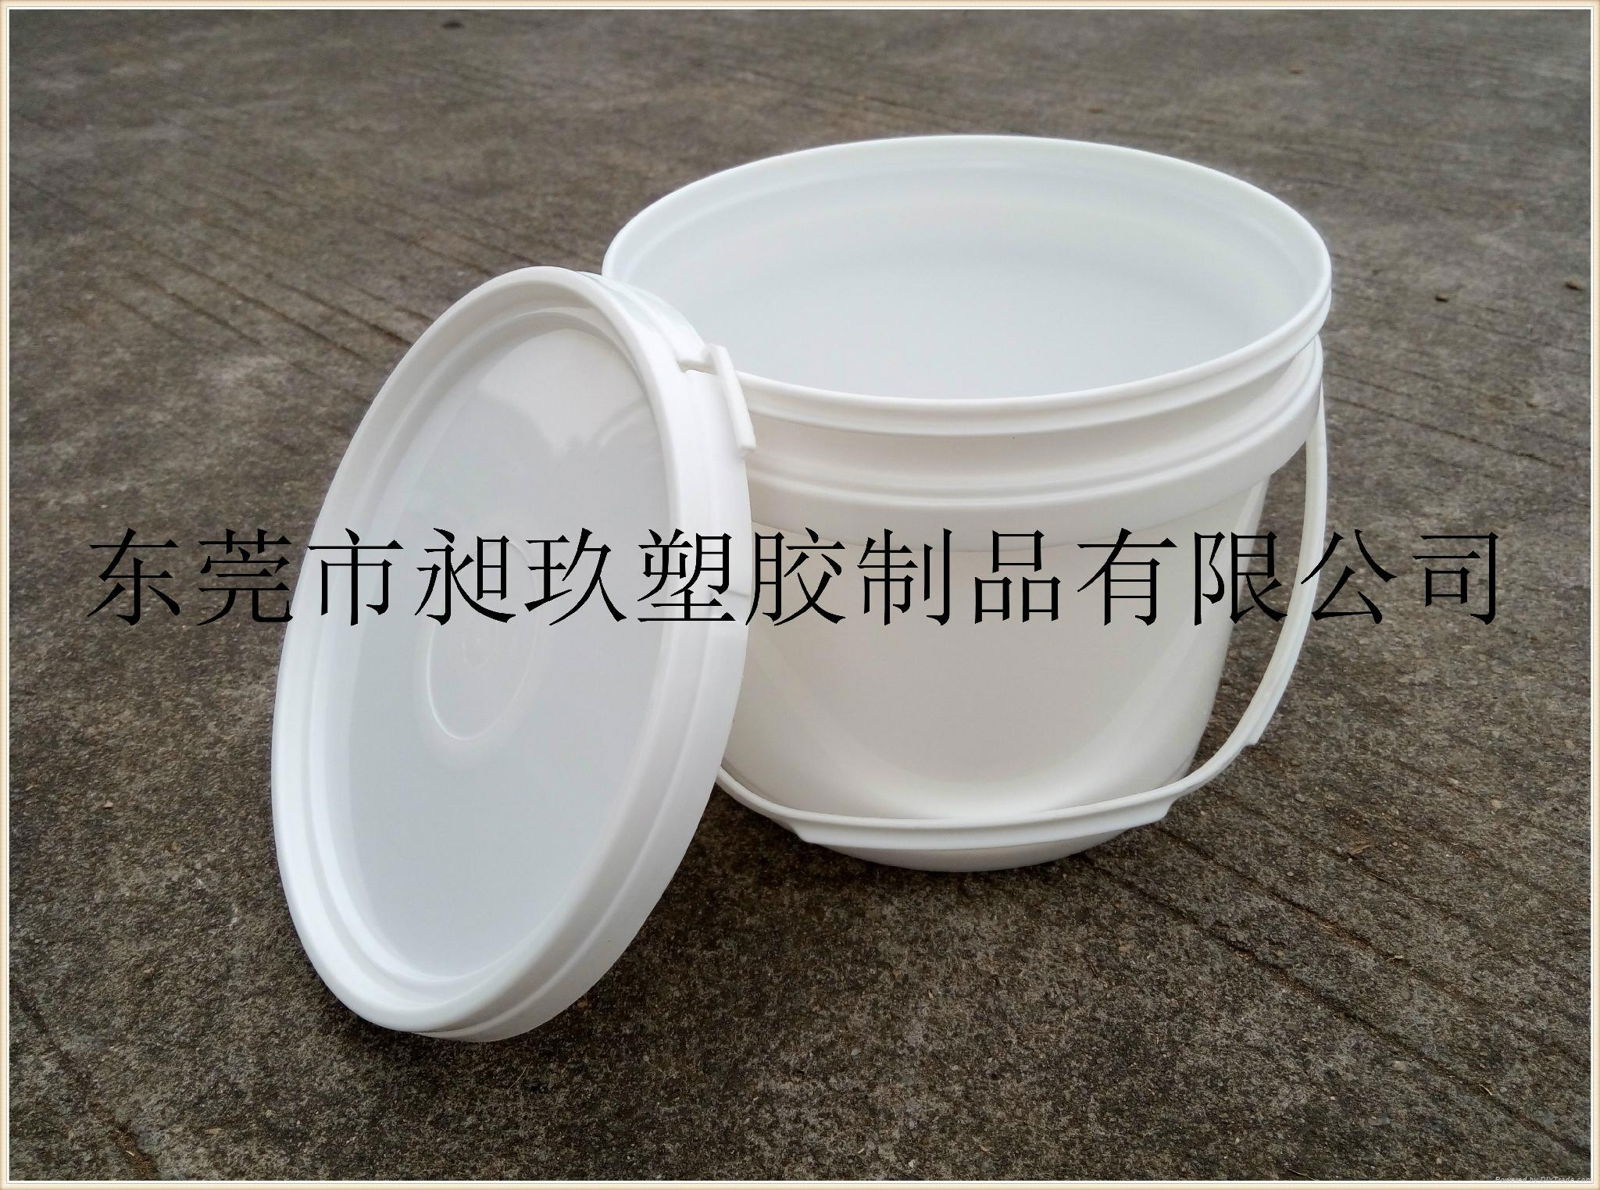 東莞3L塑料桶自產自銷質優價廉。 3